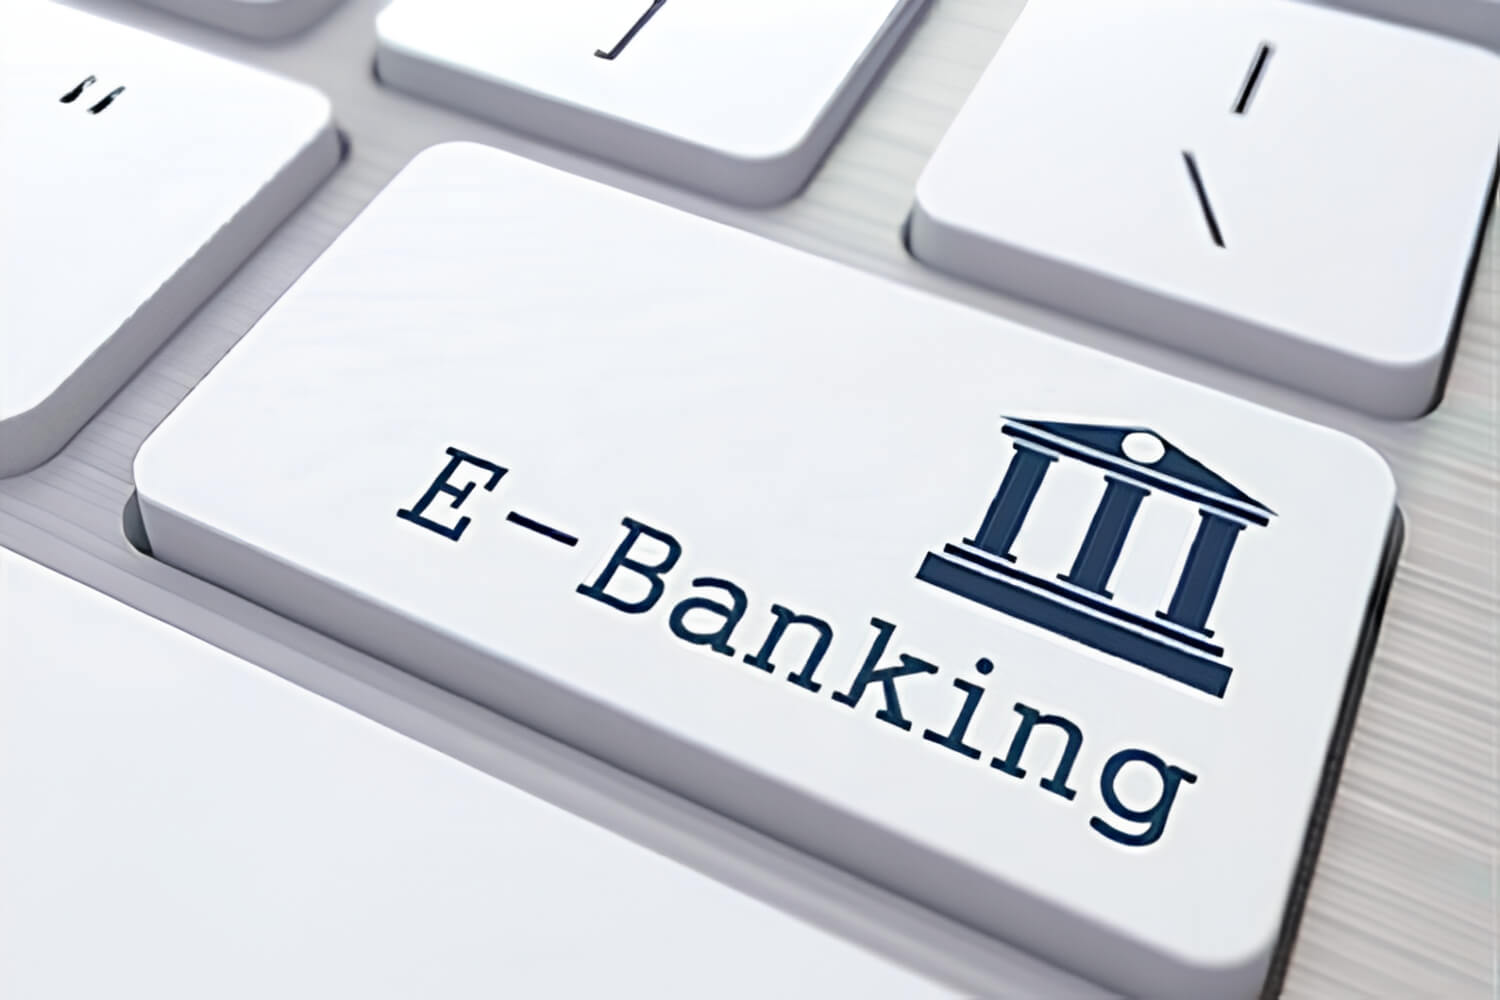 Ngân hàng nào cung cấp dịch vụ SMS Banking và Internet Banking?